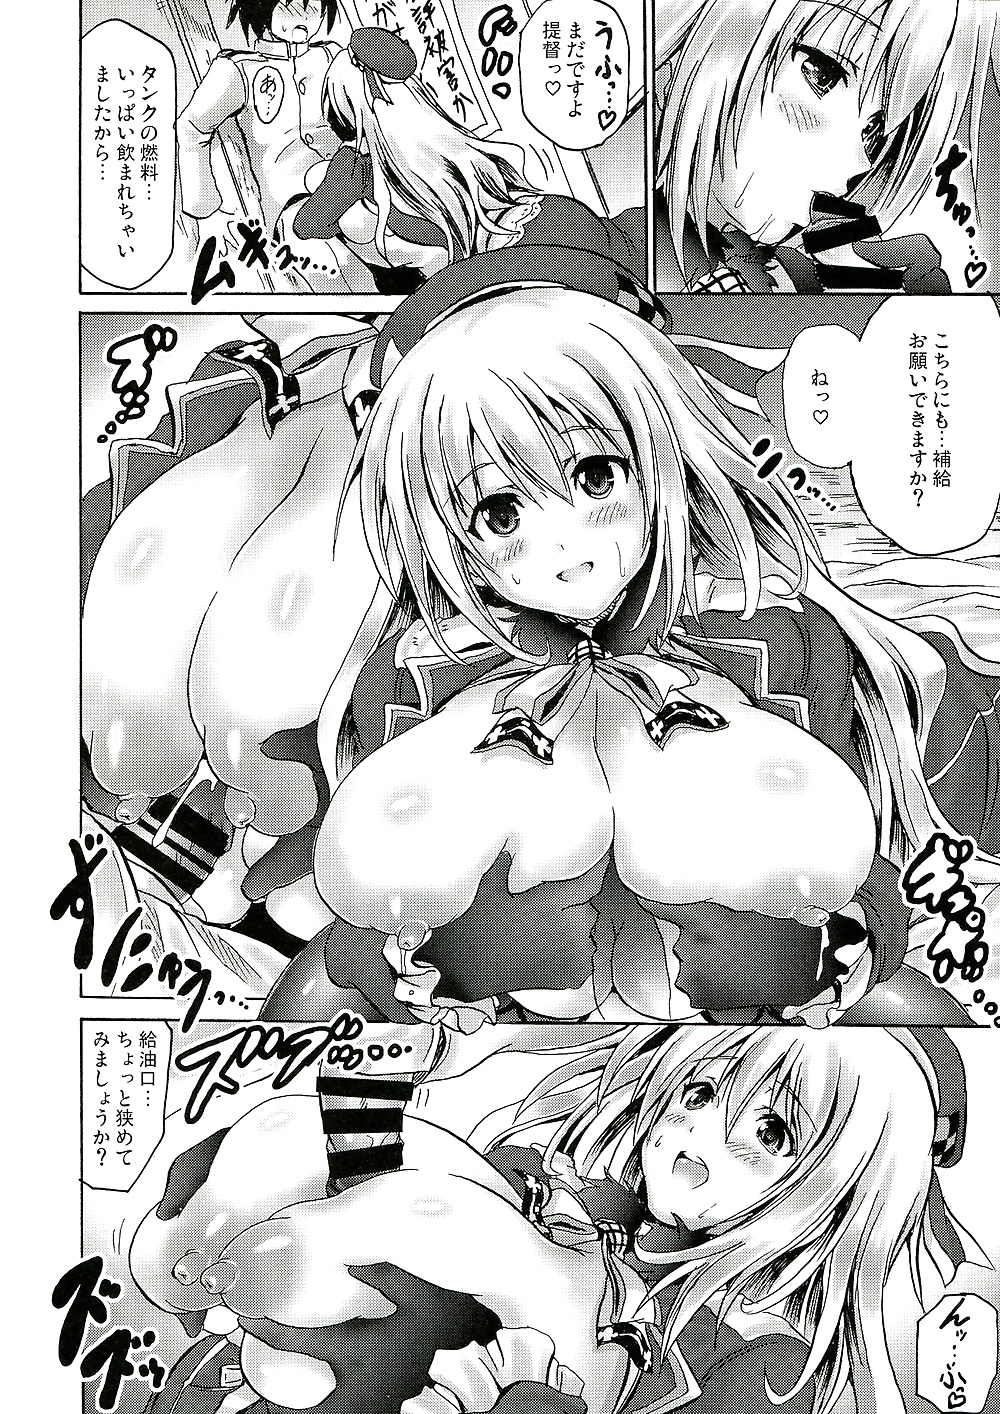 Best of Paizuri(Manga Edition) #30779424